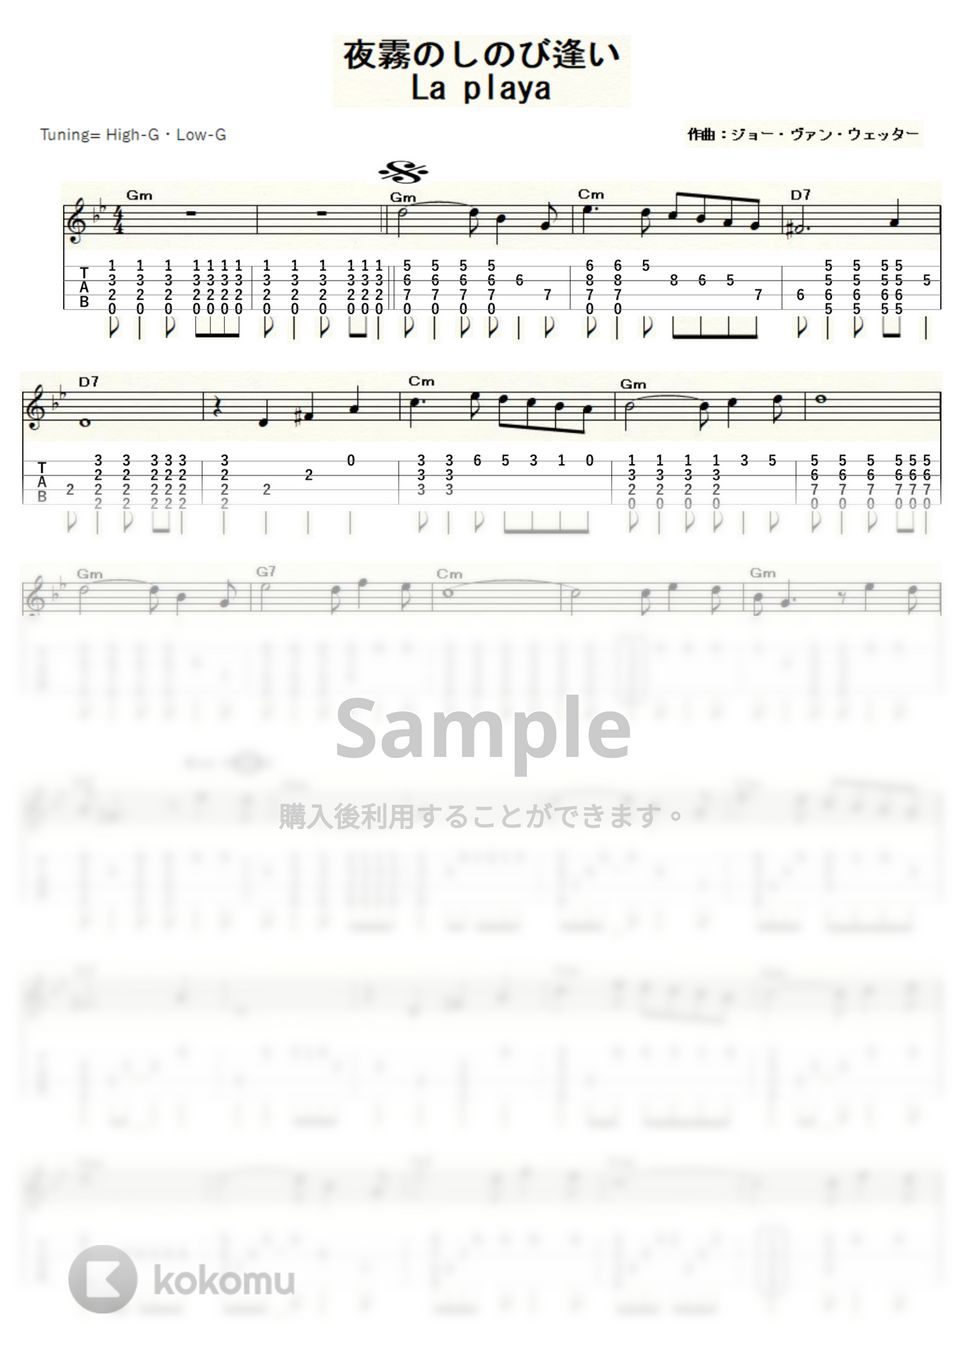 夜霧のしのび逢い - 夜霧のしのび逢い (ｳｸﾚﾚｿﾛ / High-G・Low-G / 中級) by ukulelepapa